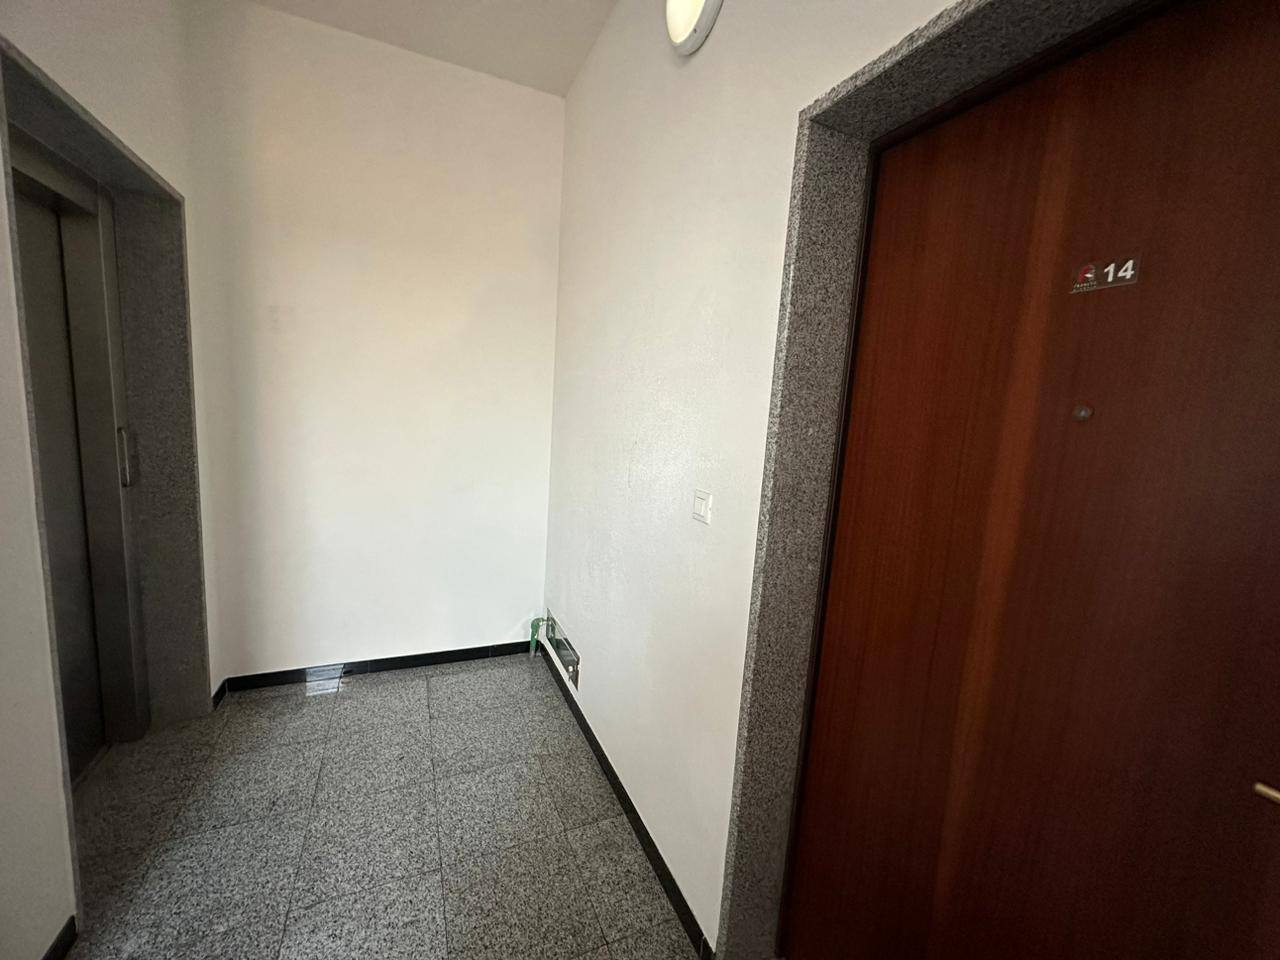 Купить 3-х комнатную квартиру в Будве: лифтовая зона